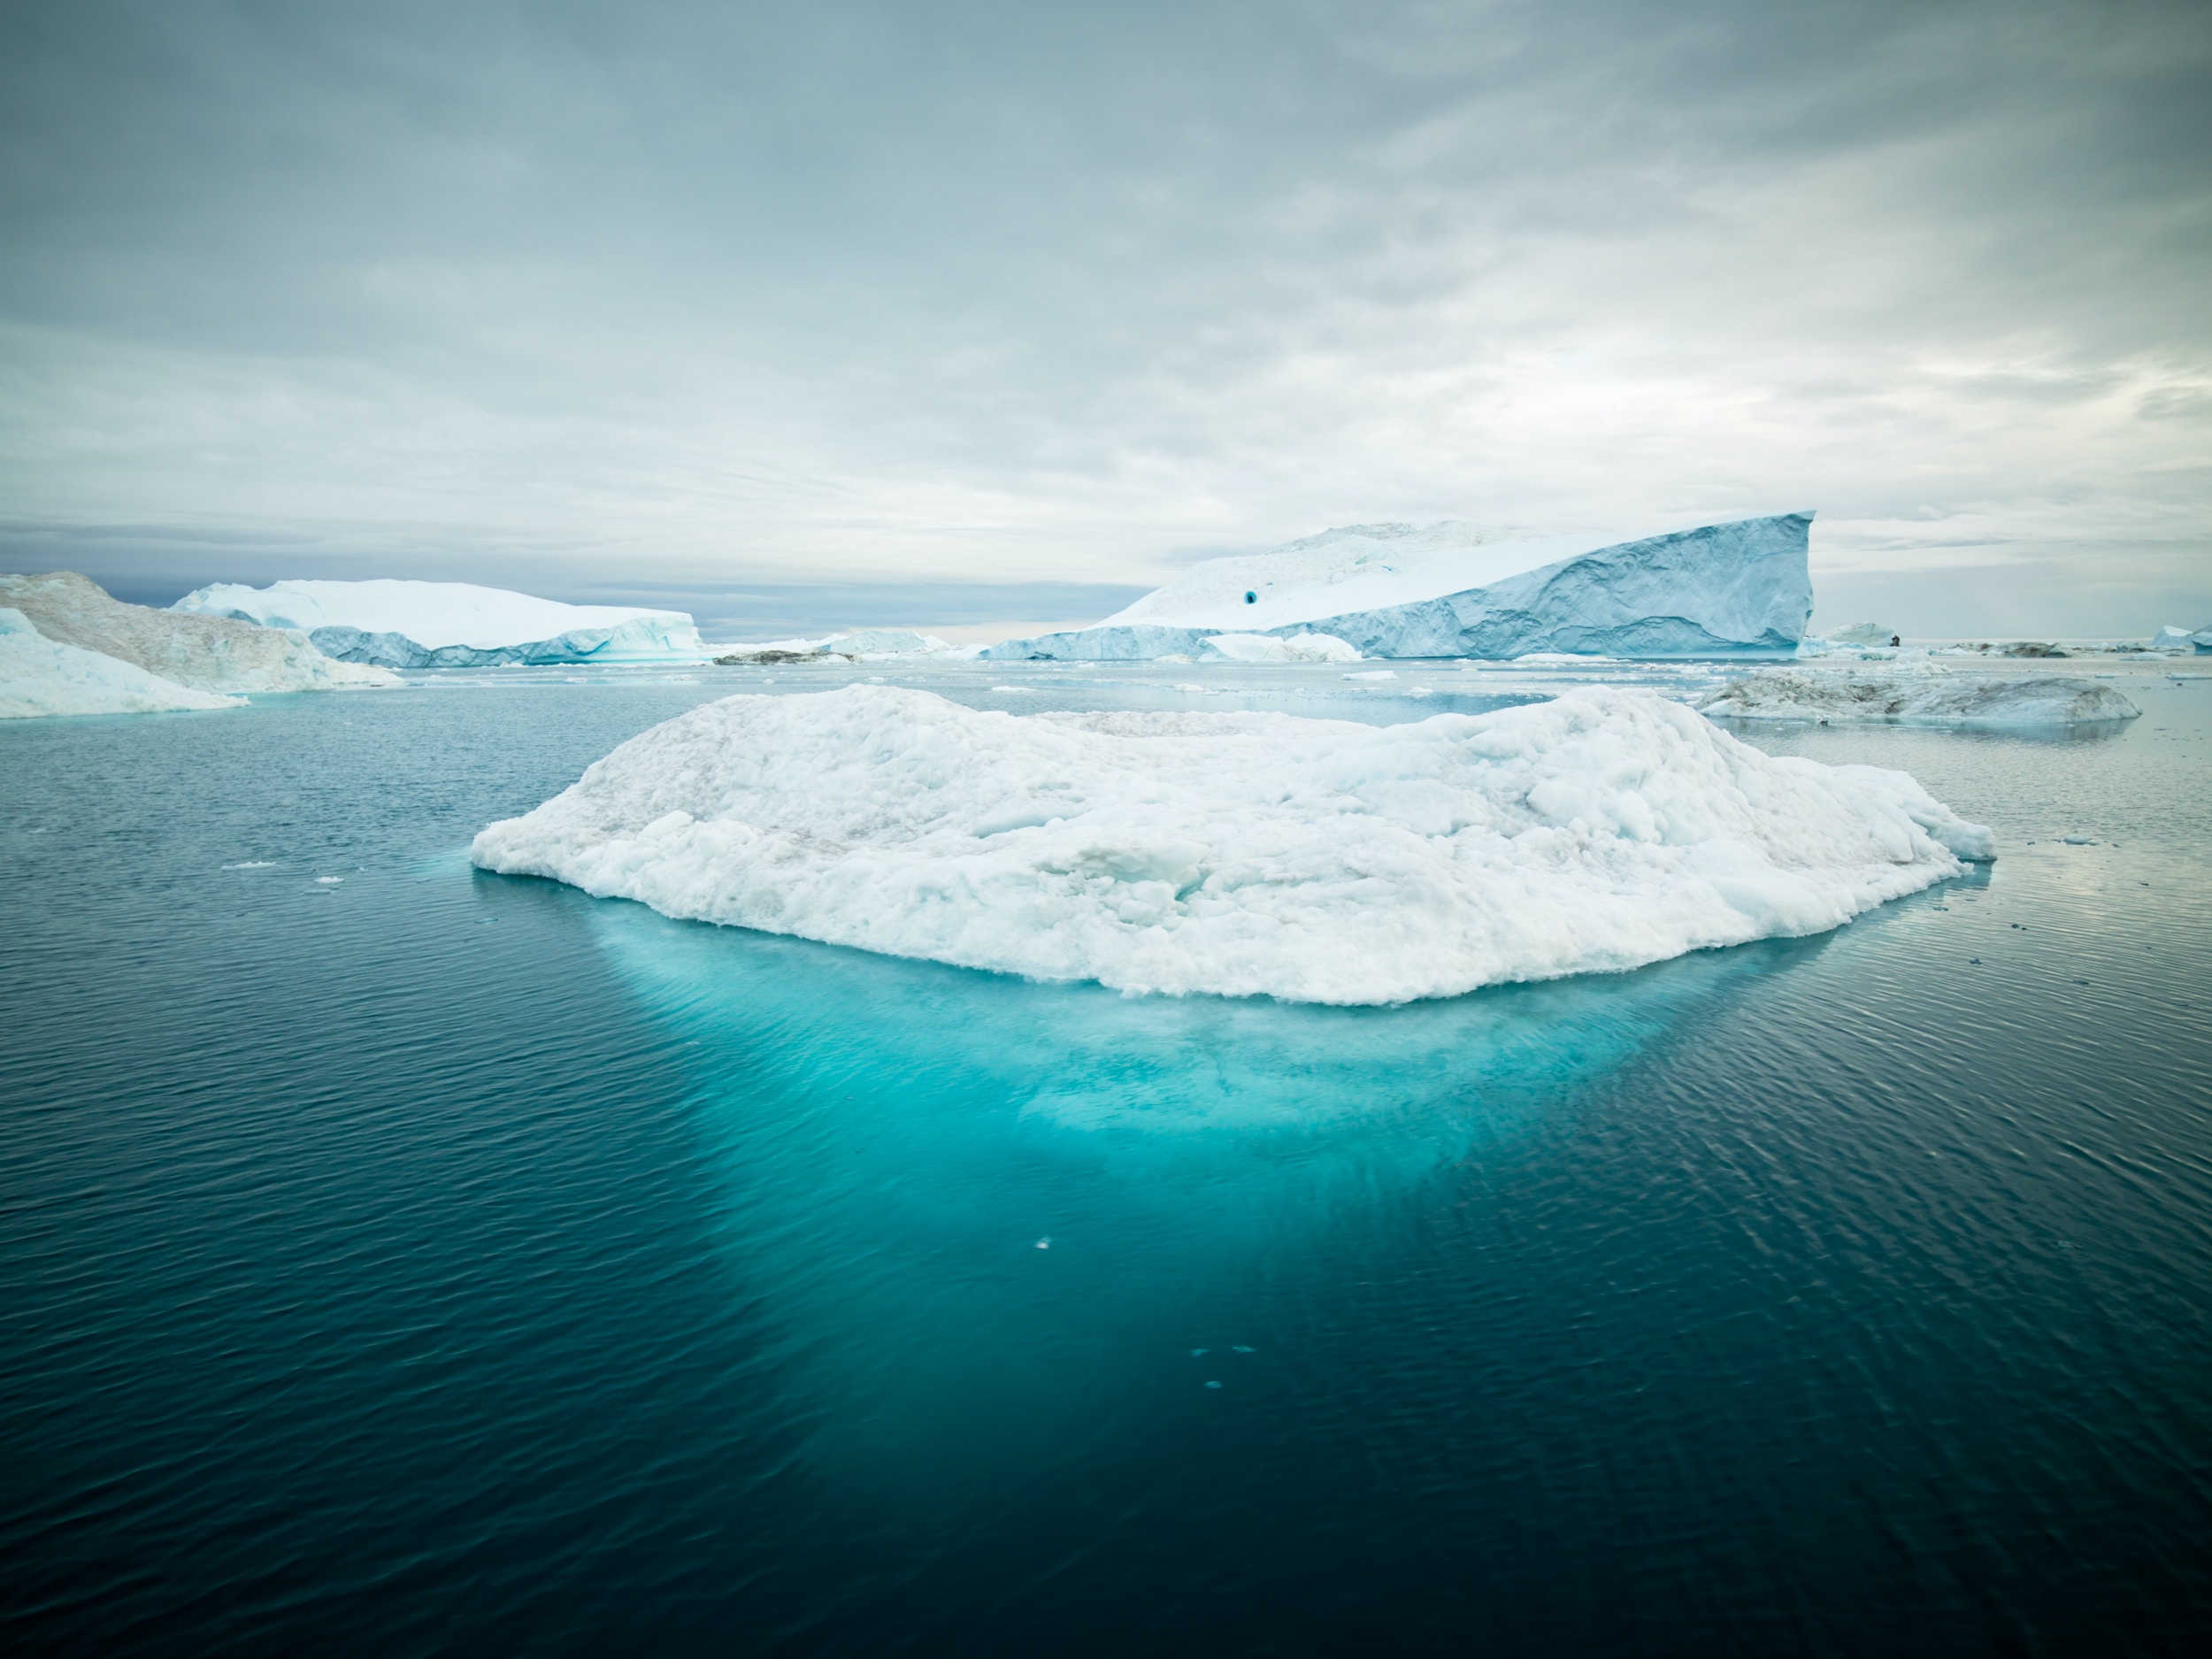 北極圏の氷を南極に保存する「アイスメモリー」計画が進行中 | SDGs特化メディア-持続可能な未来のために